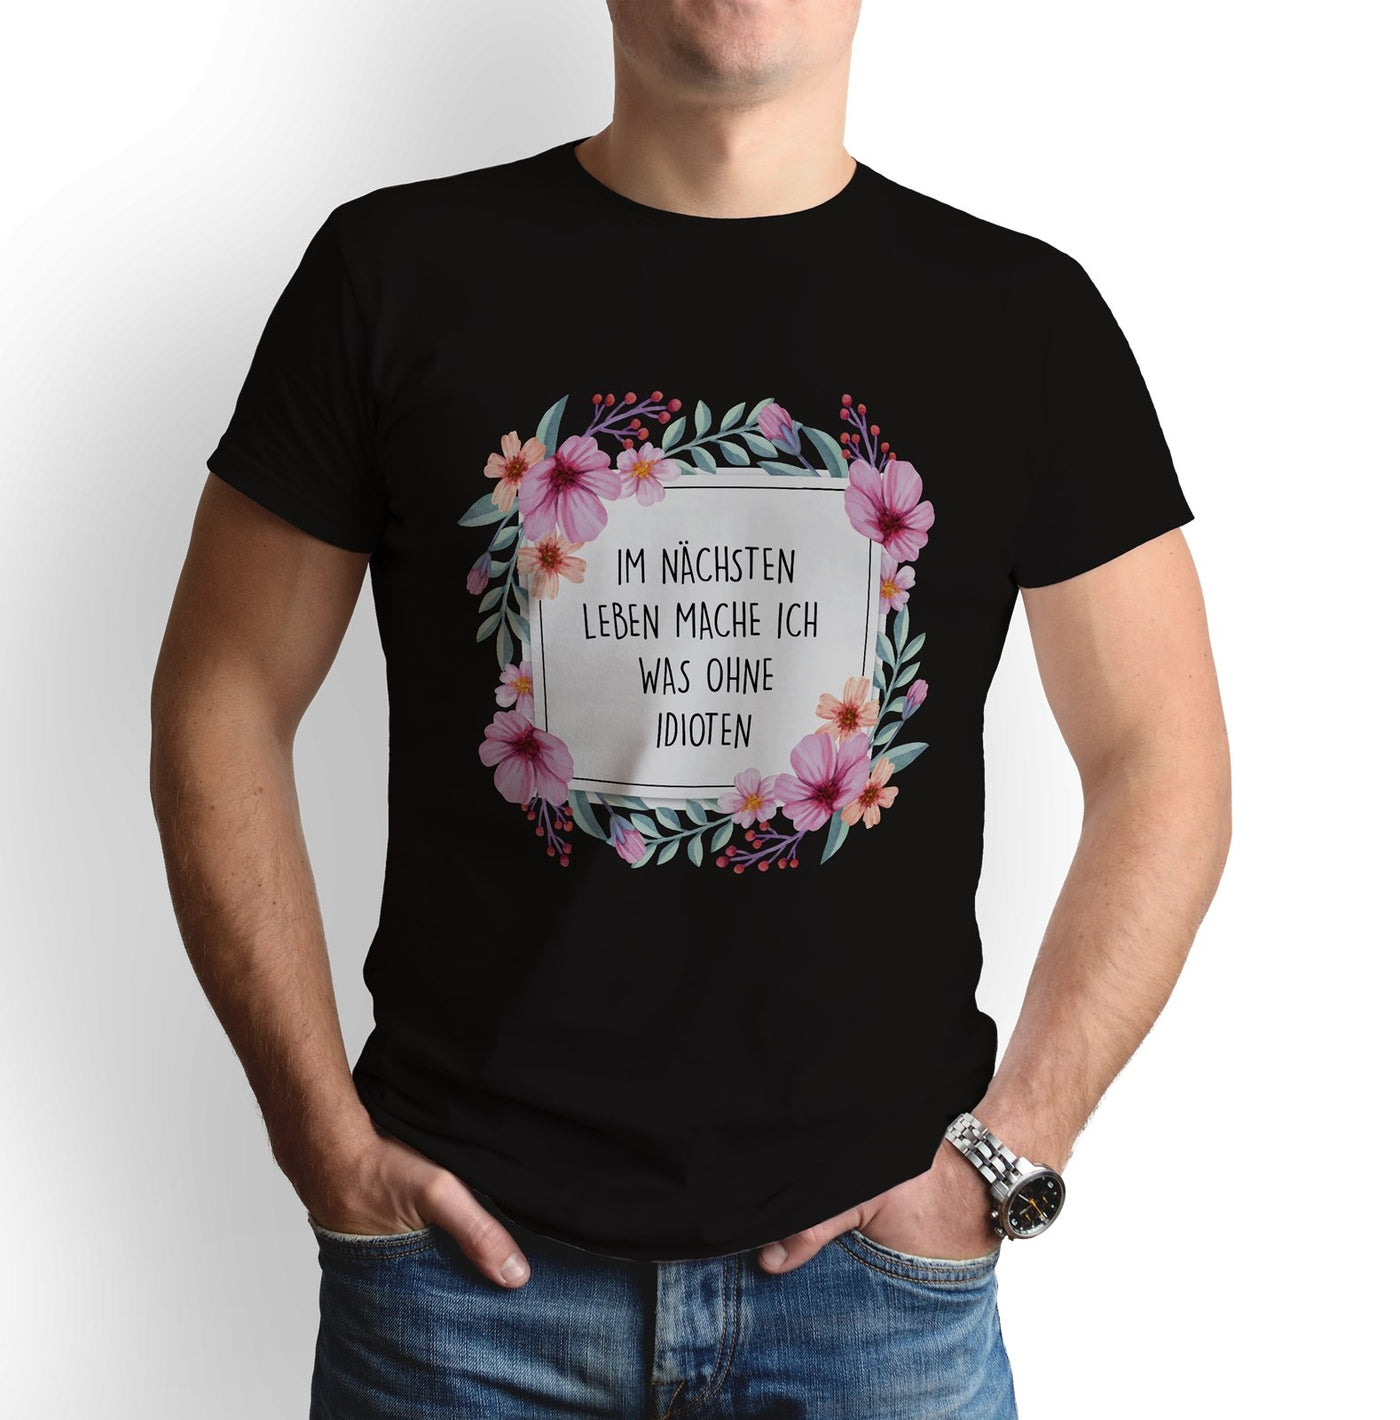 Bild: T-Shirt - Im nächsten Leben mache ich was ohne Idioten - Blumenrahmen Geschenkidee